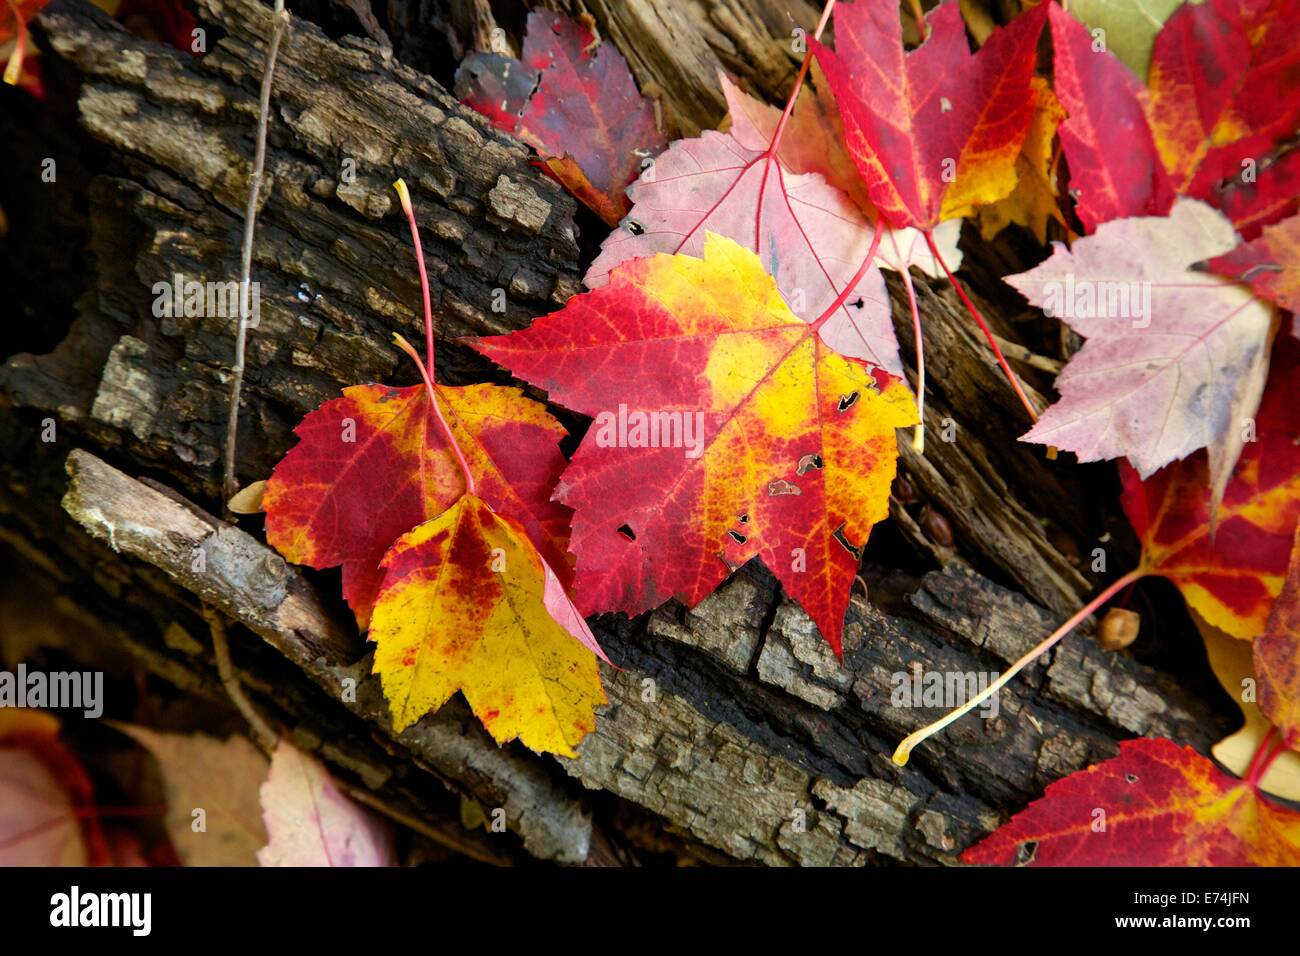 Colorful-autumn-maple-leaves-on-log-E74J